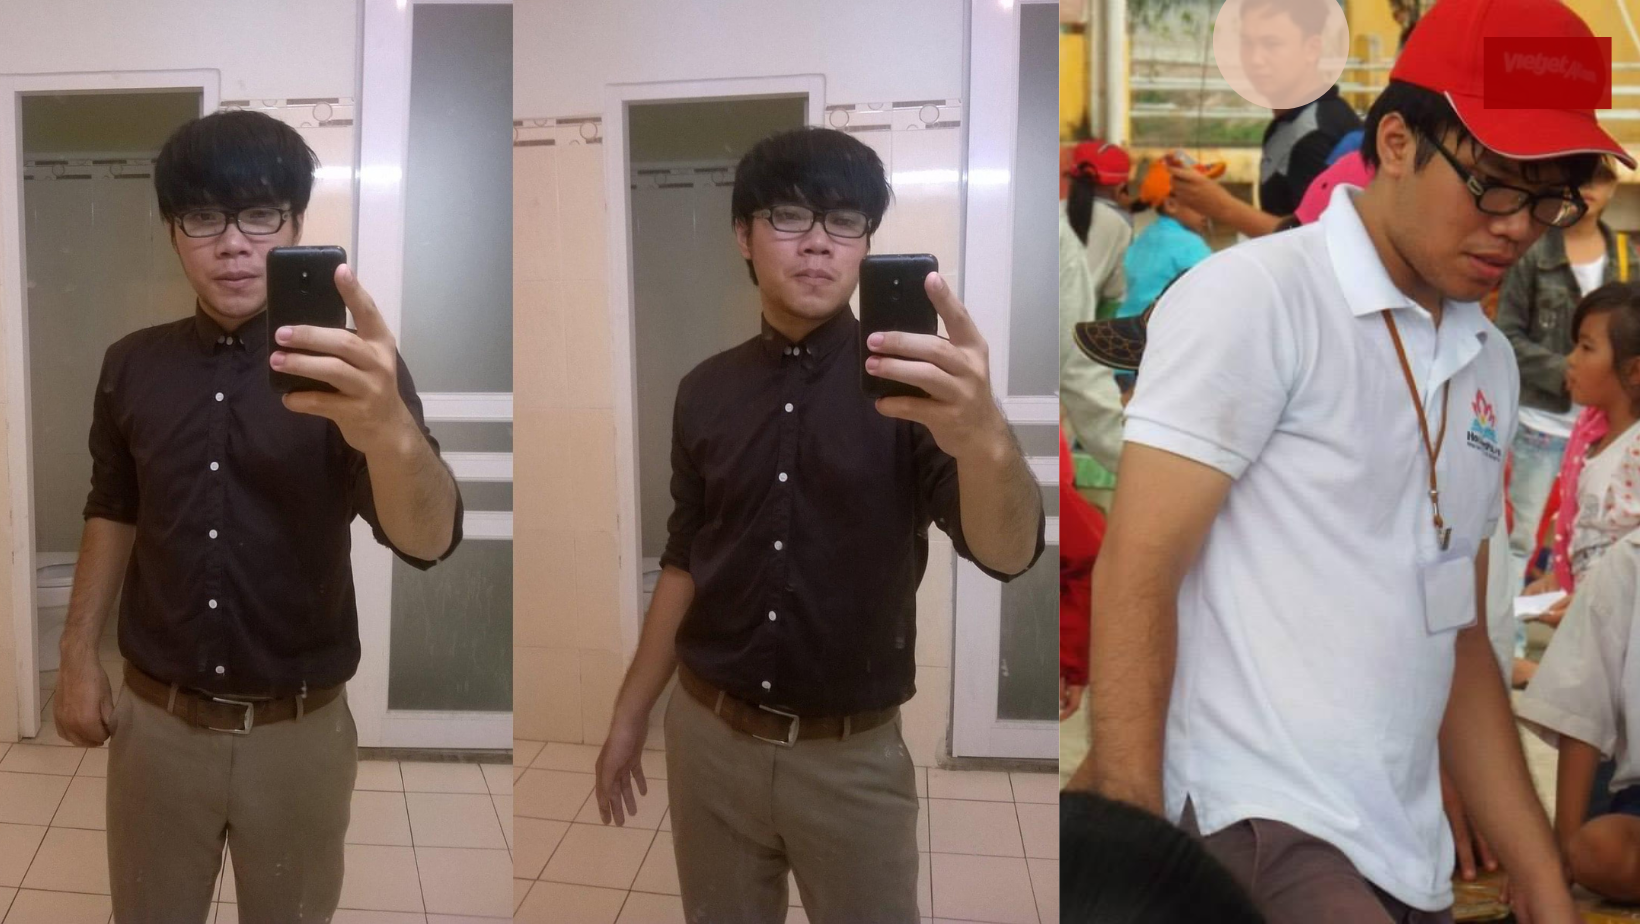 Giảm 23kg trong 7 tháng, chàng trai trẻ tiết lộ những “bí kíp vàng” để giảm cân hiệu quả - 2